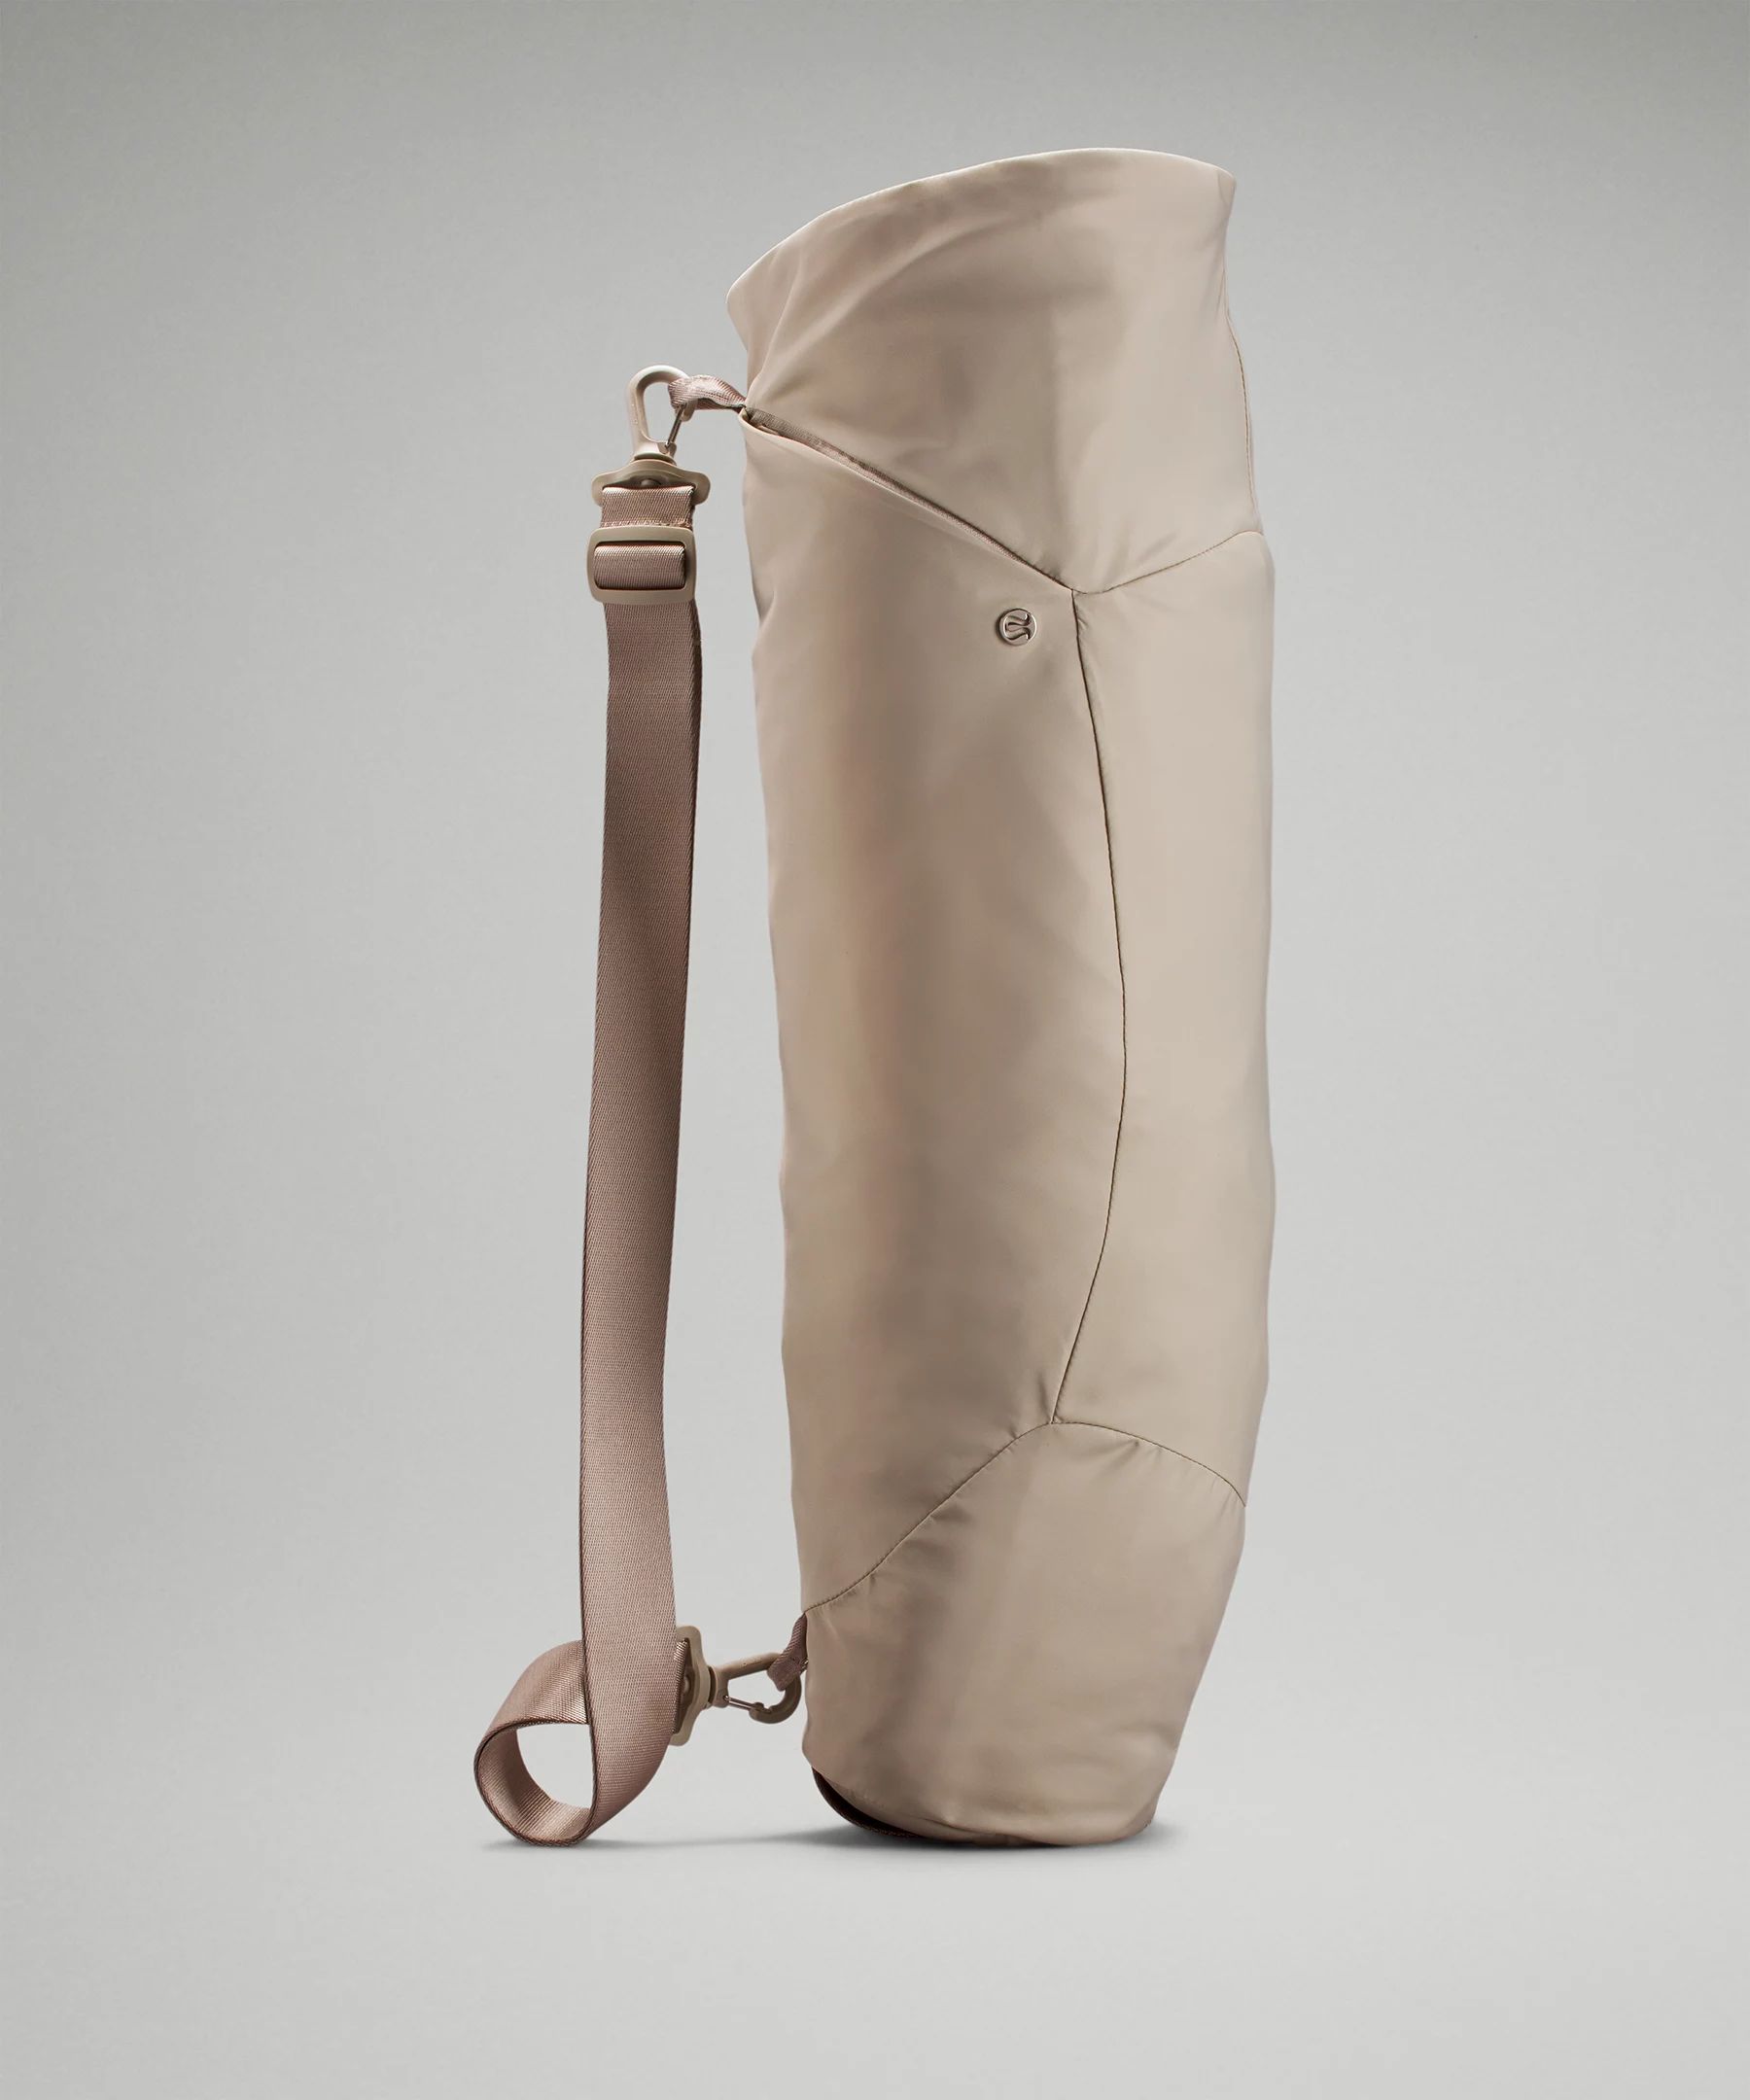 Adjustable Yoga Mat Bag | Lululemon (US)